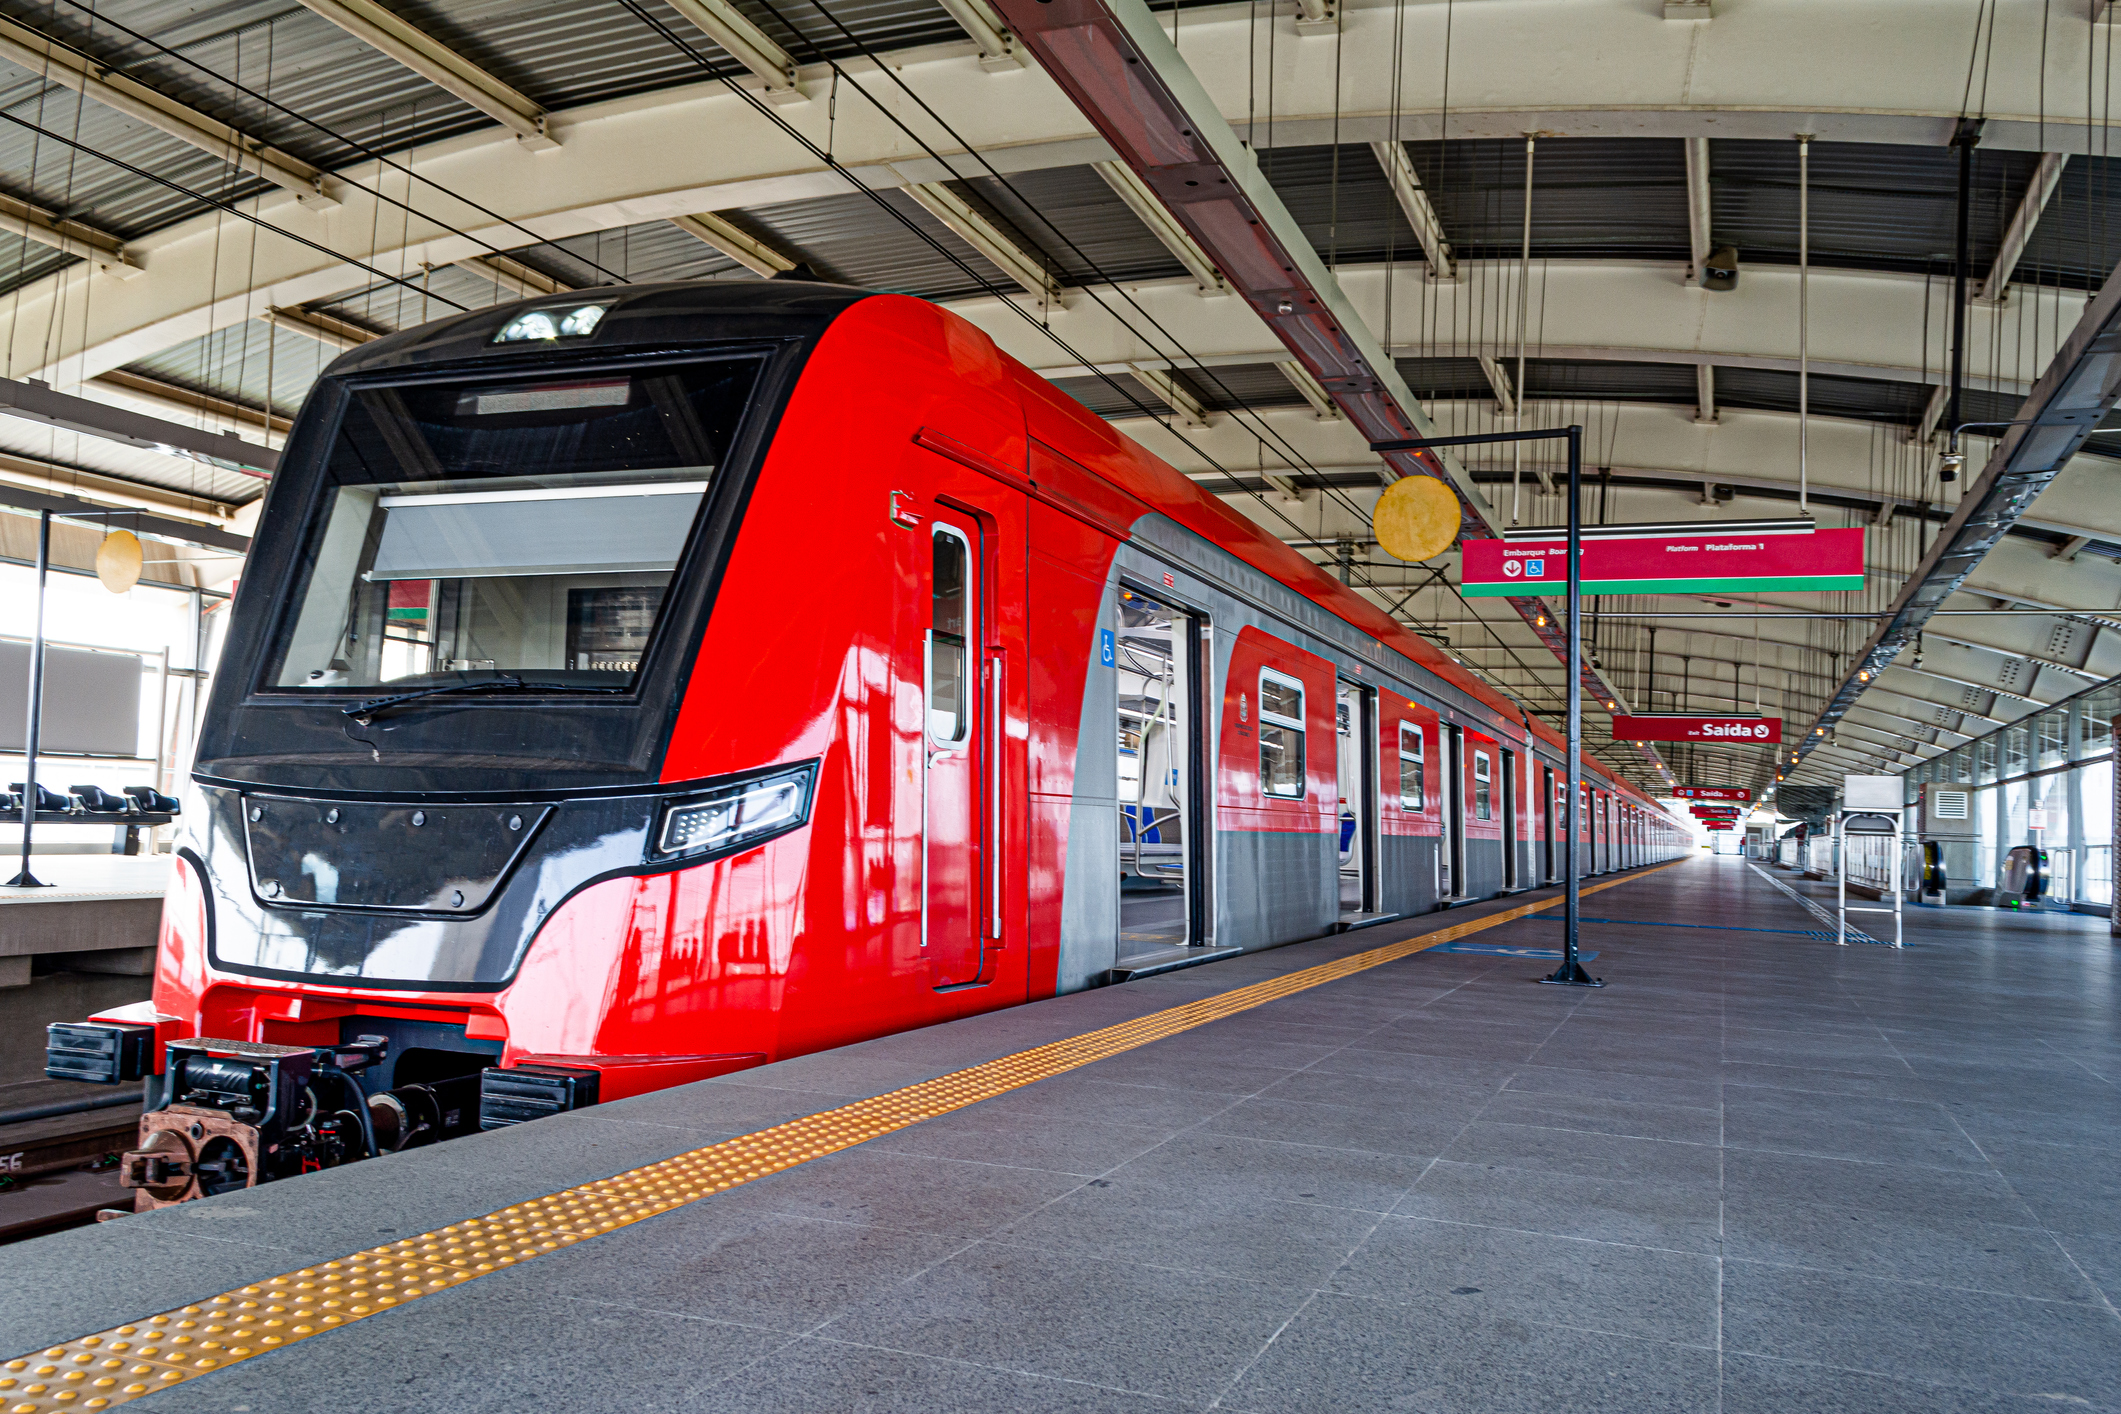 Trem Intercidades: Uma Nova Realidade para a Região Metropolitana de Campinas